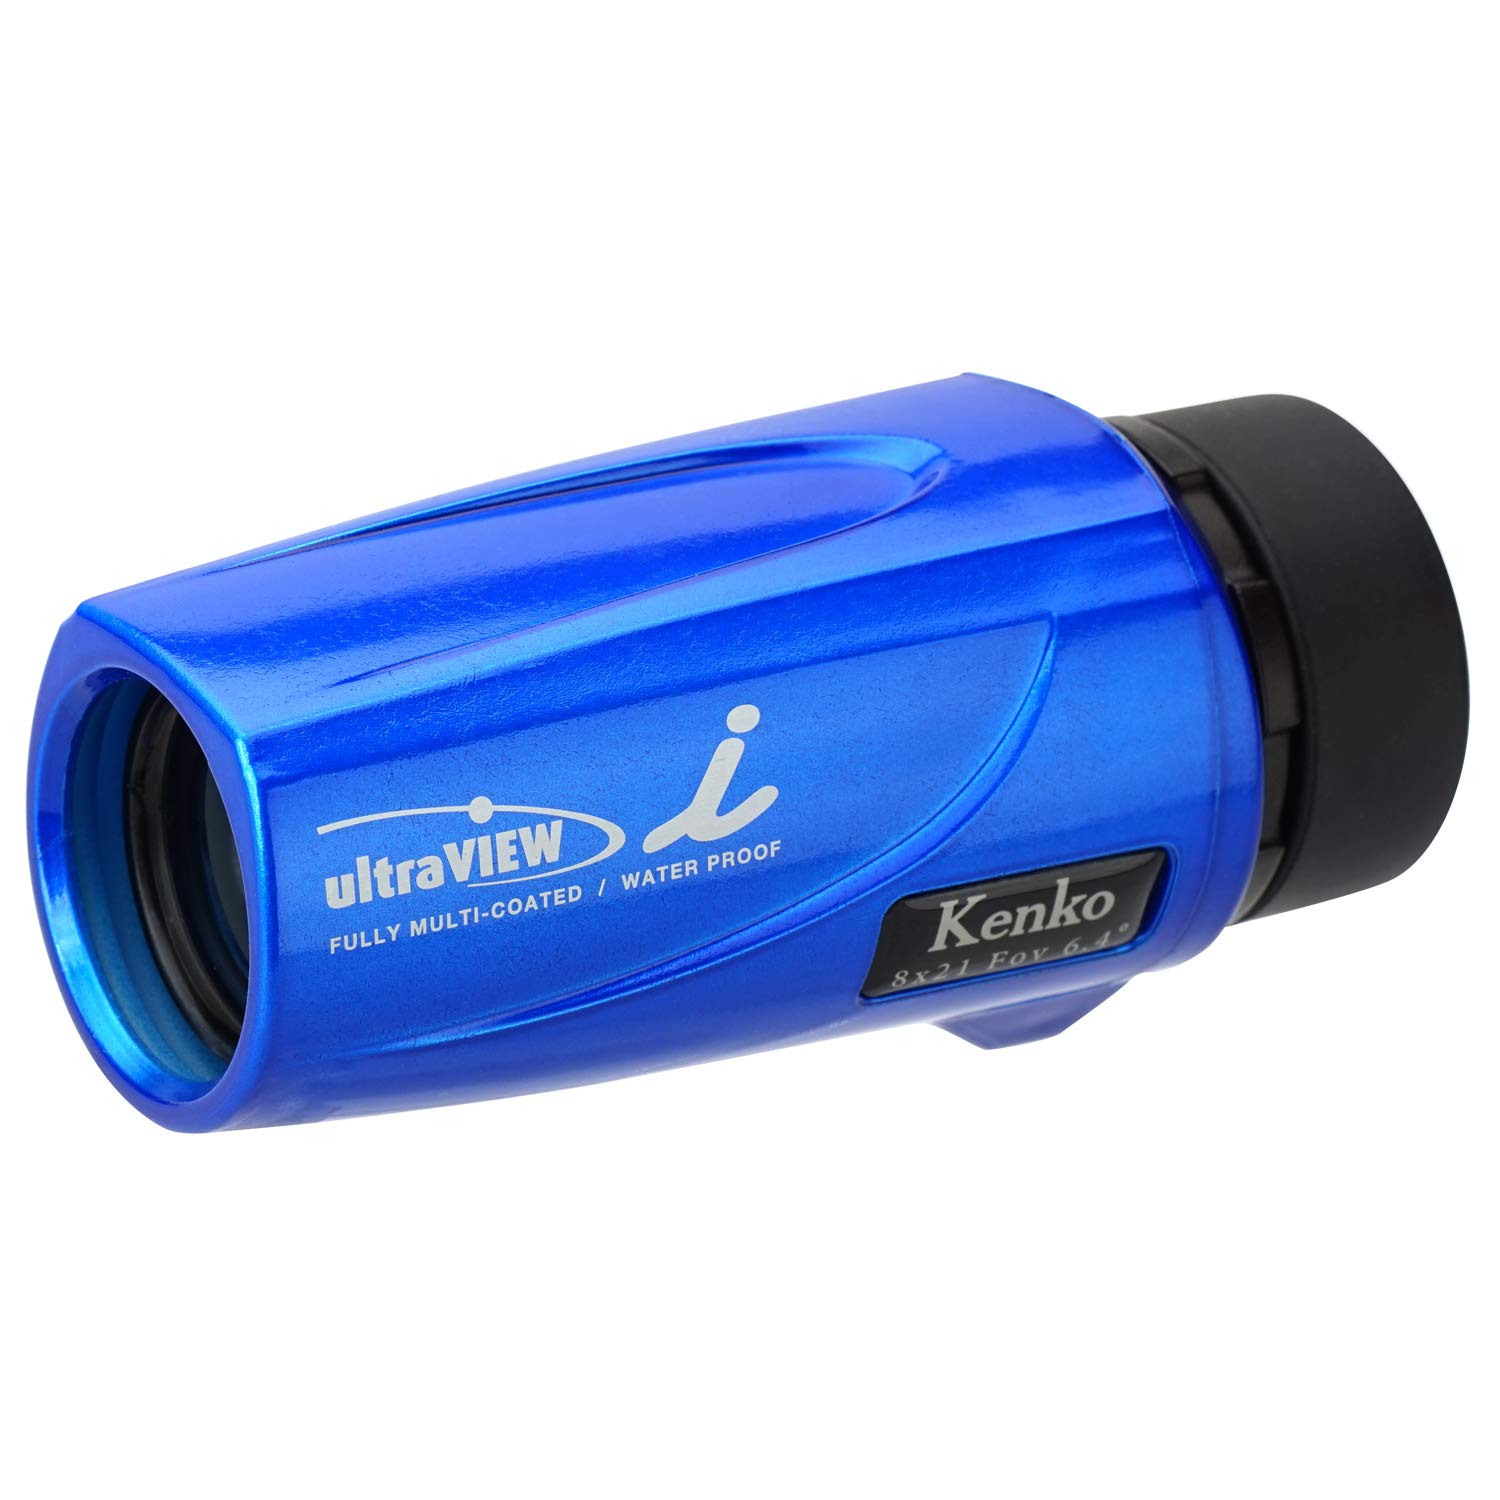 Kenko 単眼鏡 ウルトラビューI 8×21FMC 8倍 21mm口径 完全防水 フルマルチコーティング ブルー 320013